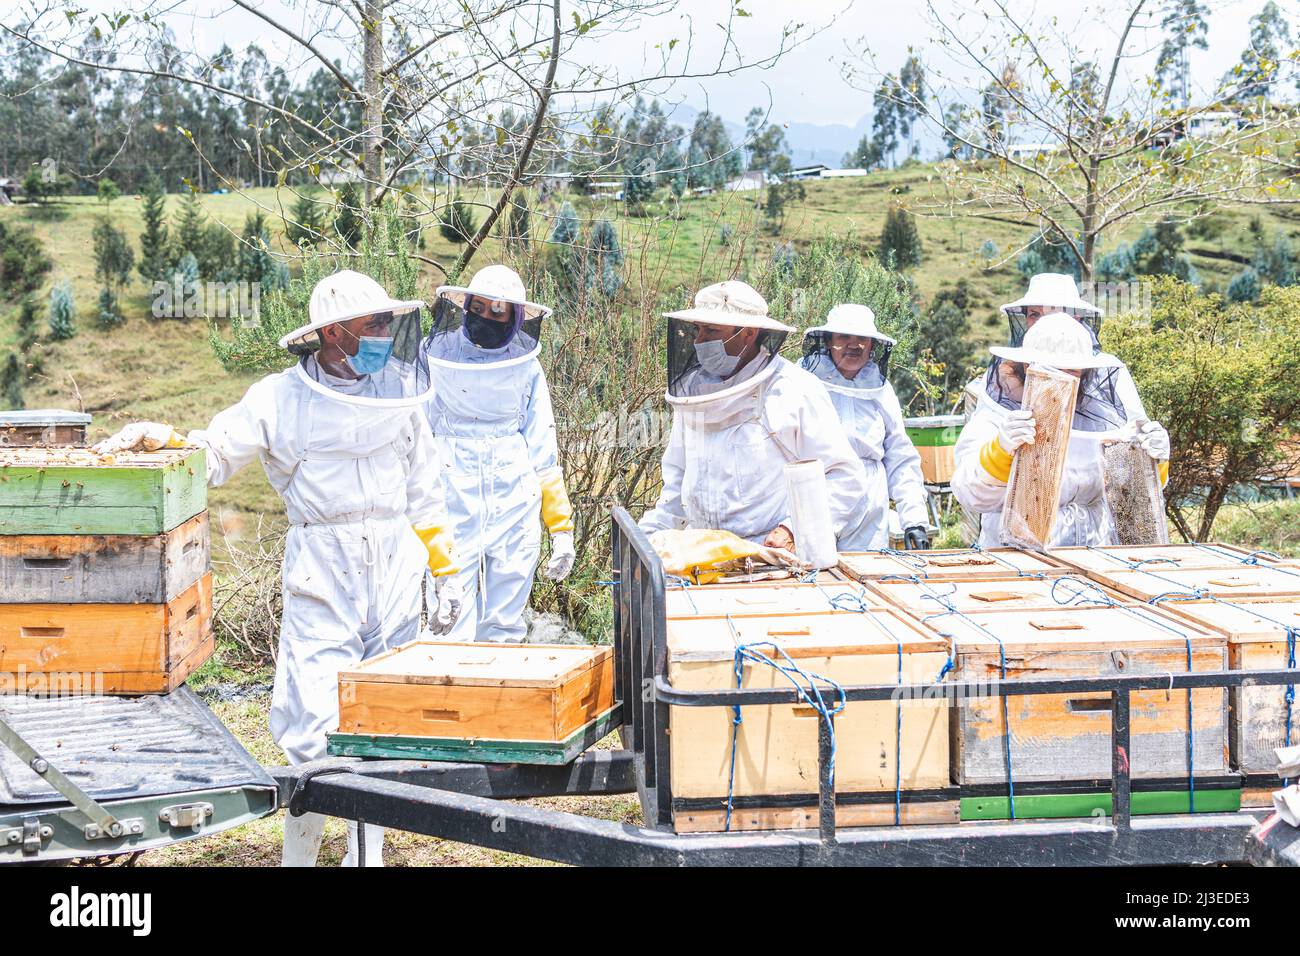 Groupe de apiculteurs mâles et femelles préparant des nids d'abeilles pour le transport. Concept de récolte de miel d'abeille Banque D'Images